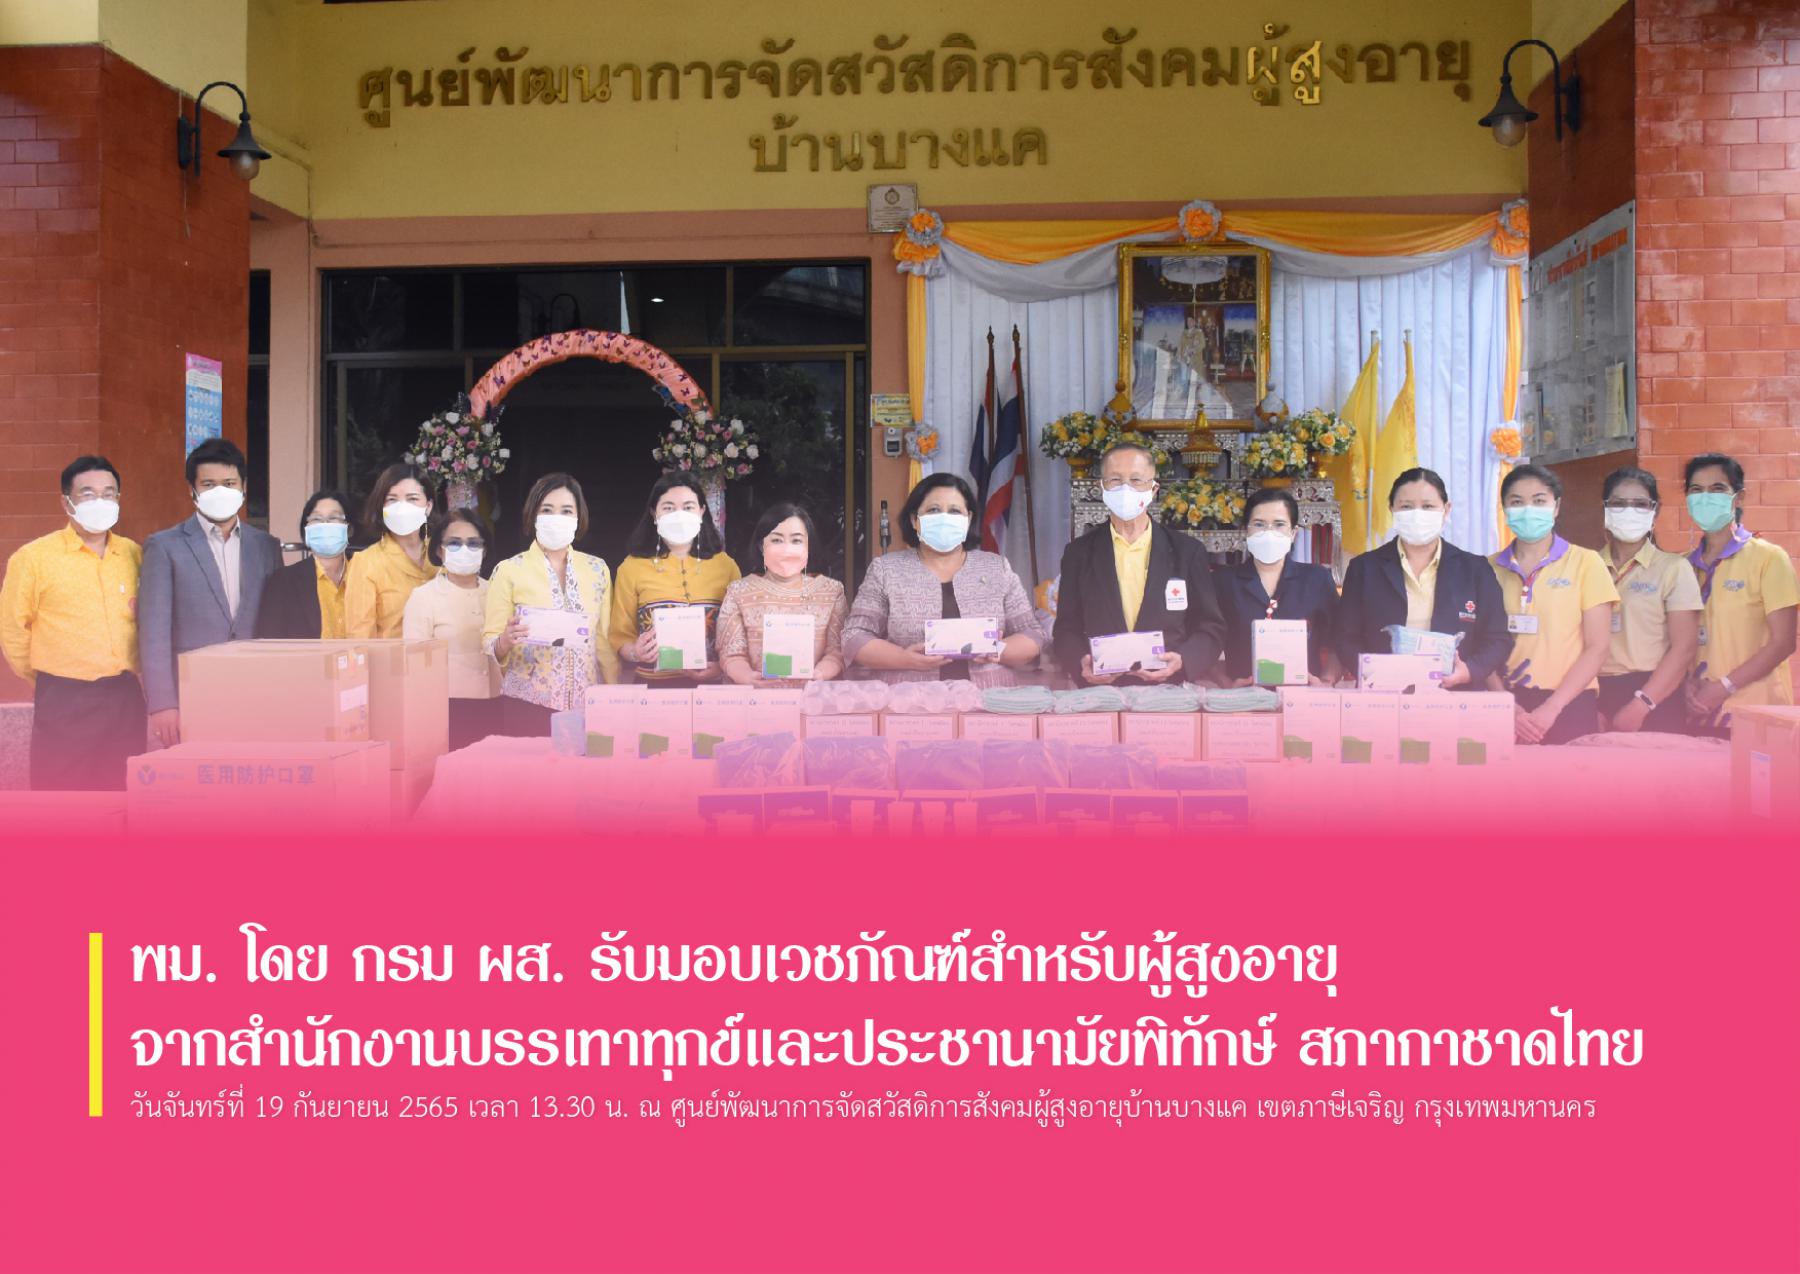 พม. โดย กรม ผส. รับมอบเวชภัณฑ์สำหรับผู้สูงอายุจากสำนักงานบรรเทาทุกข์และประชานามัยพิทักษ์ สภากาชาดไทย